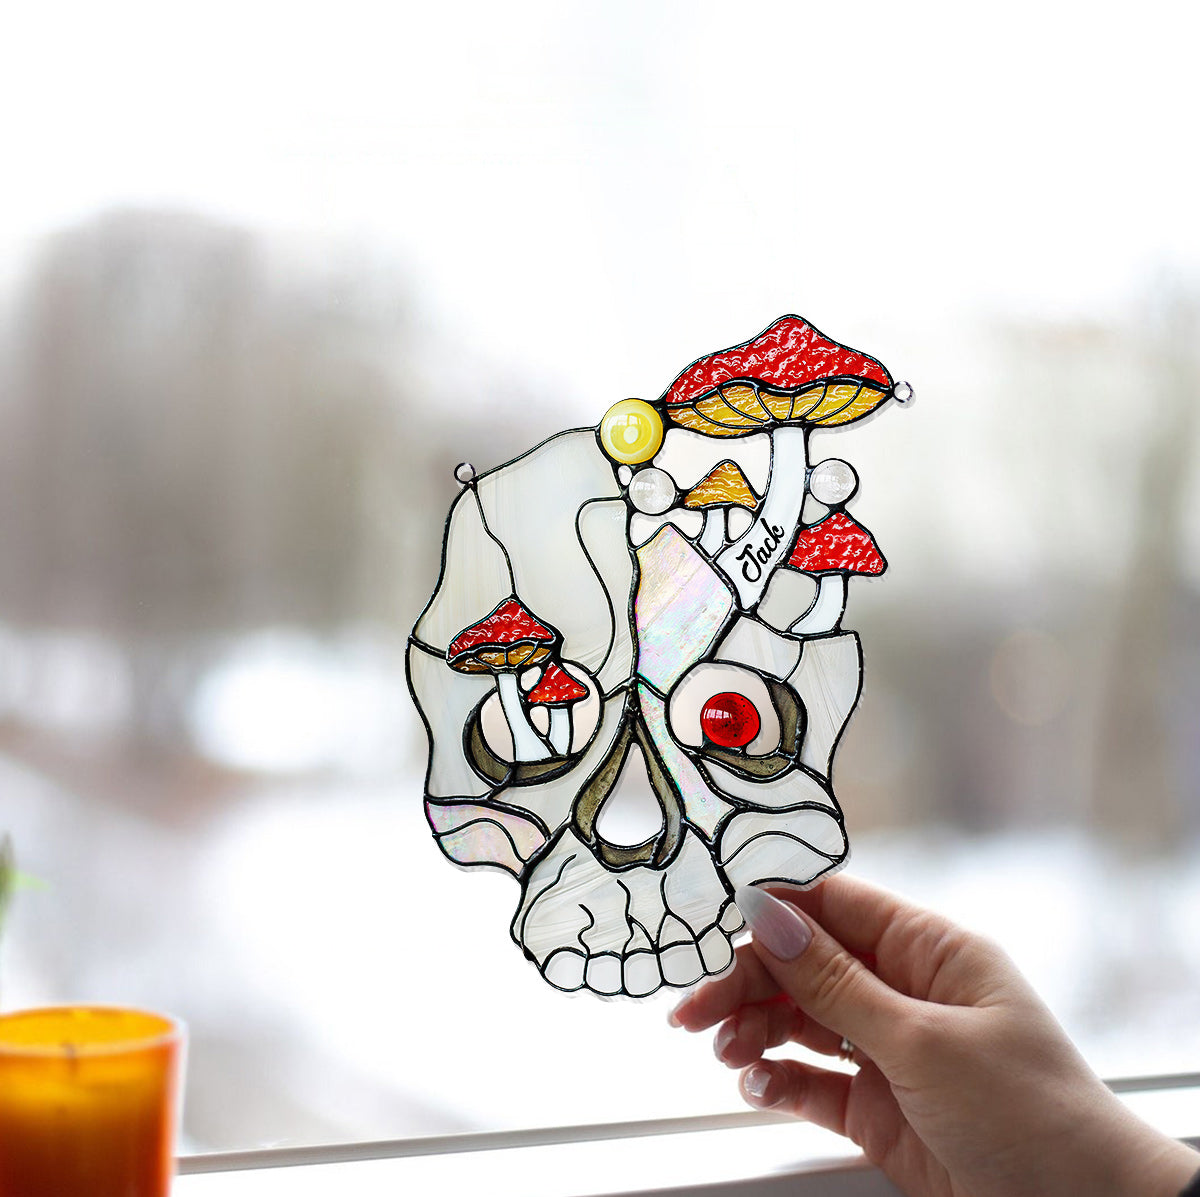 Mushroom White Skull - Personalized Skull Window Hanging Suncatcher Ornament